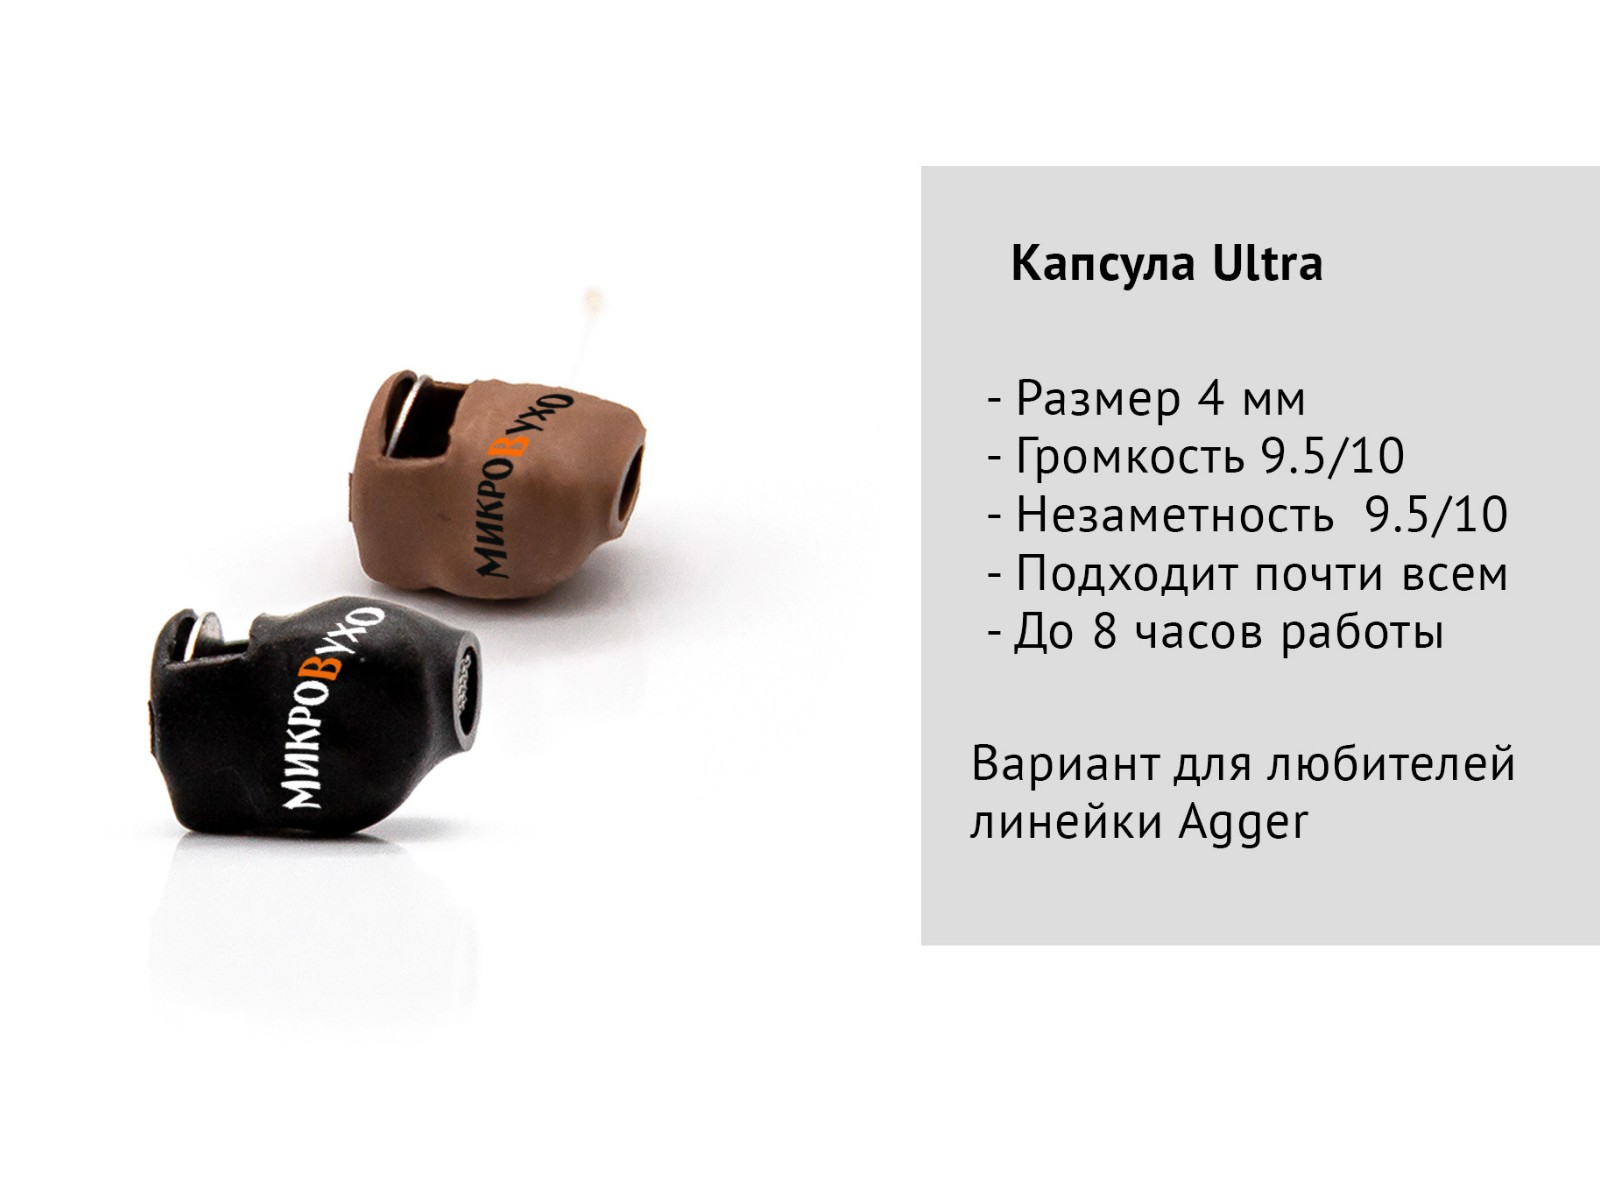 Универсальная гарнитура Bluetooth Box Standard Plus c капсулой Nano 4 мм и магнитами 2 мм 8